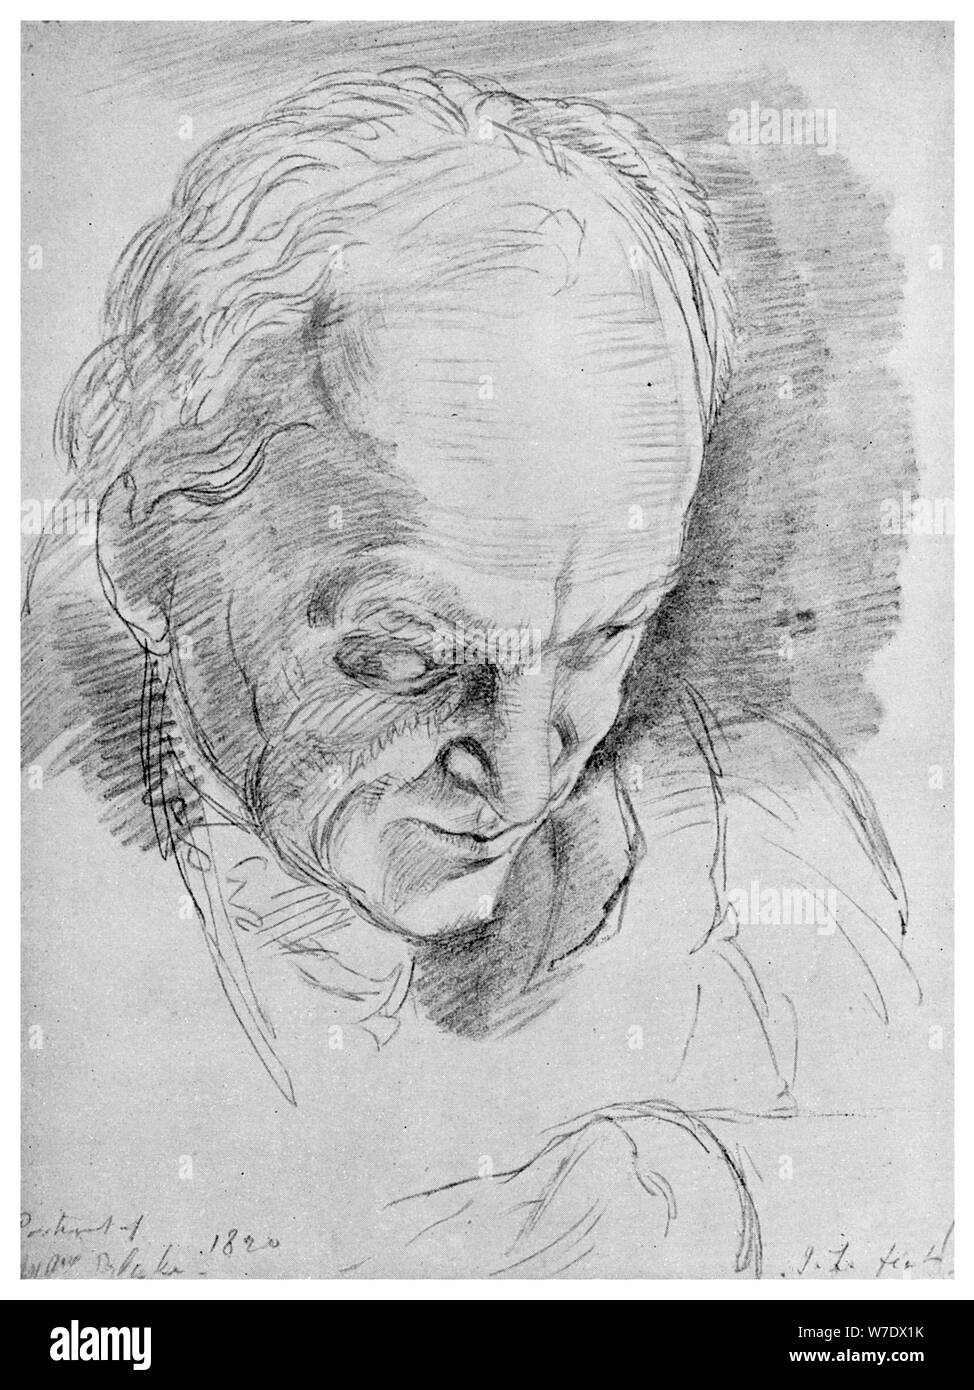 William Blake, poète, mystique anglaise, artiste et graveur, 19e siècle (1956). Artiste : Inconnu Banque D'Images